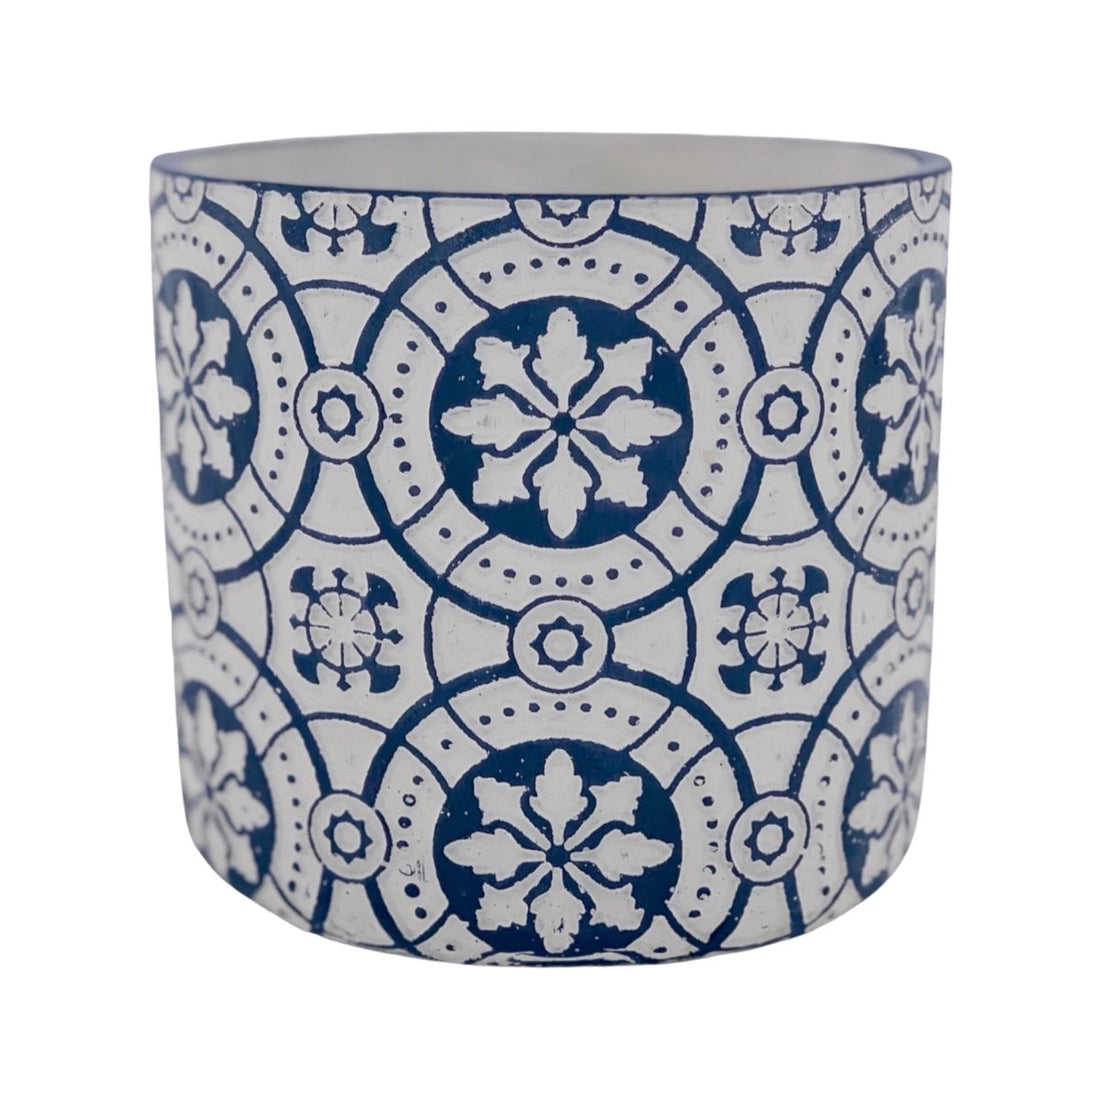 Blumentopf mit nordischem Motiv aus Beton, verschiedene Größen, blau/grau mit Ablauf -KAKTOS